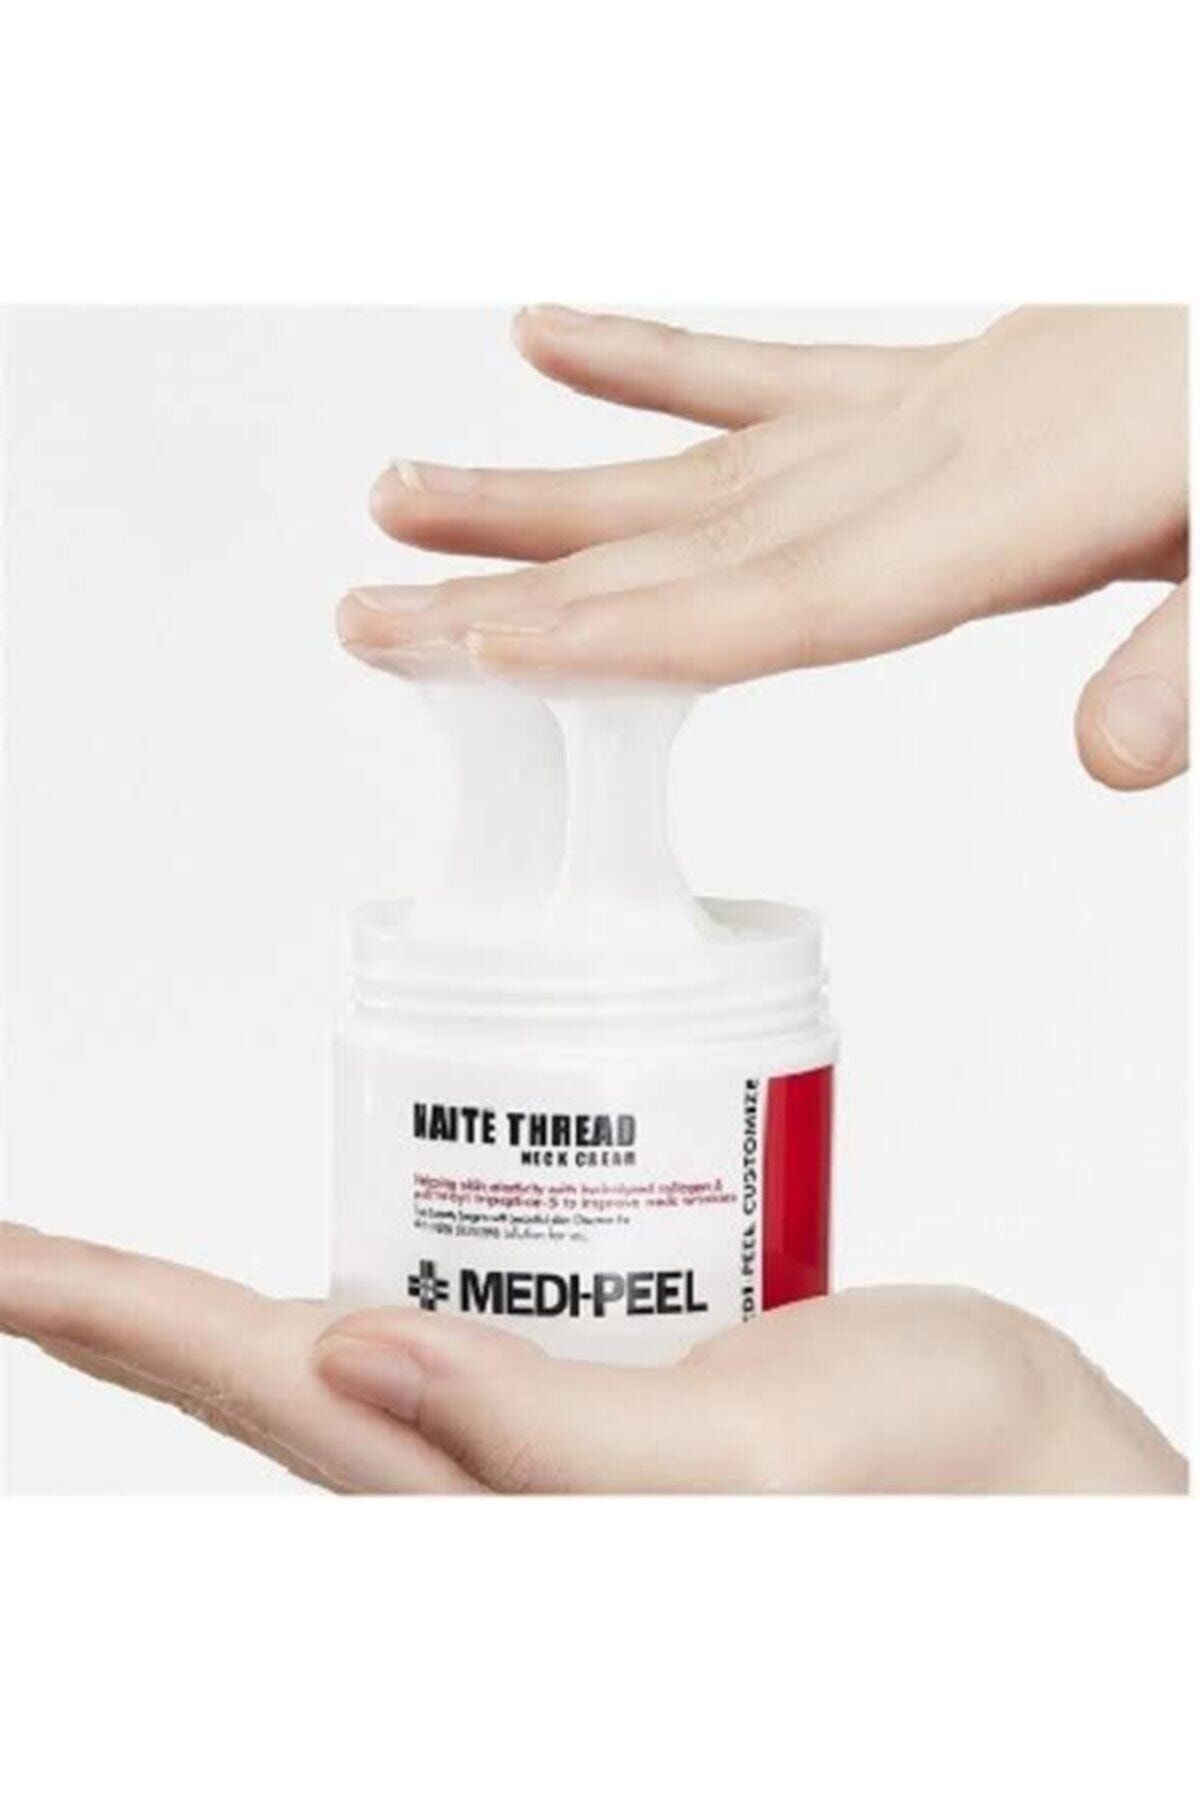 Medipeel Medi-peel Naite Thread Neck Cream -kırışıklık Karşıtı Boyun Kremi 100gr